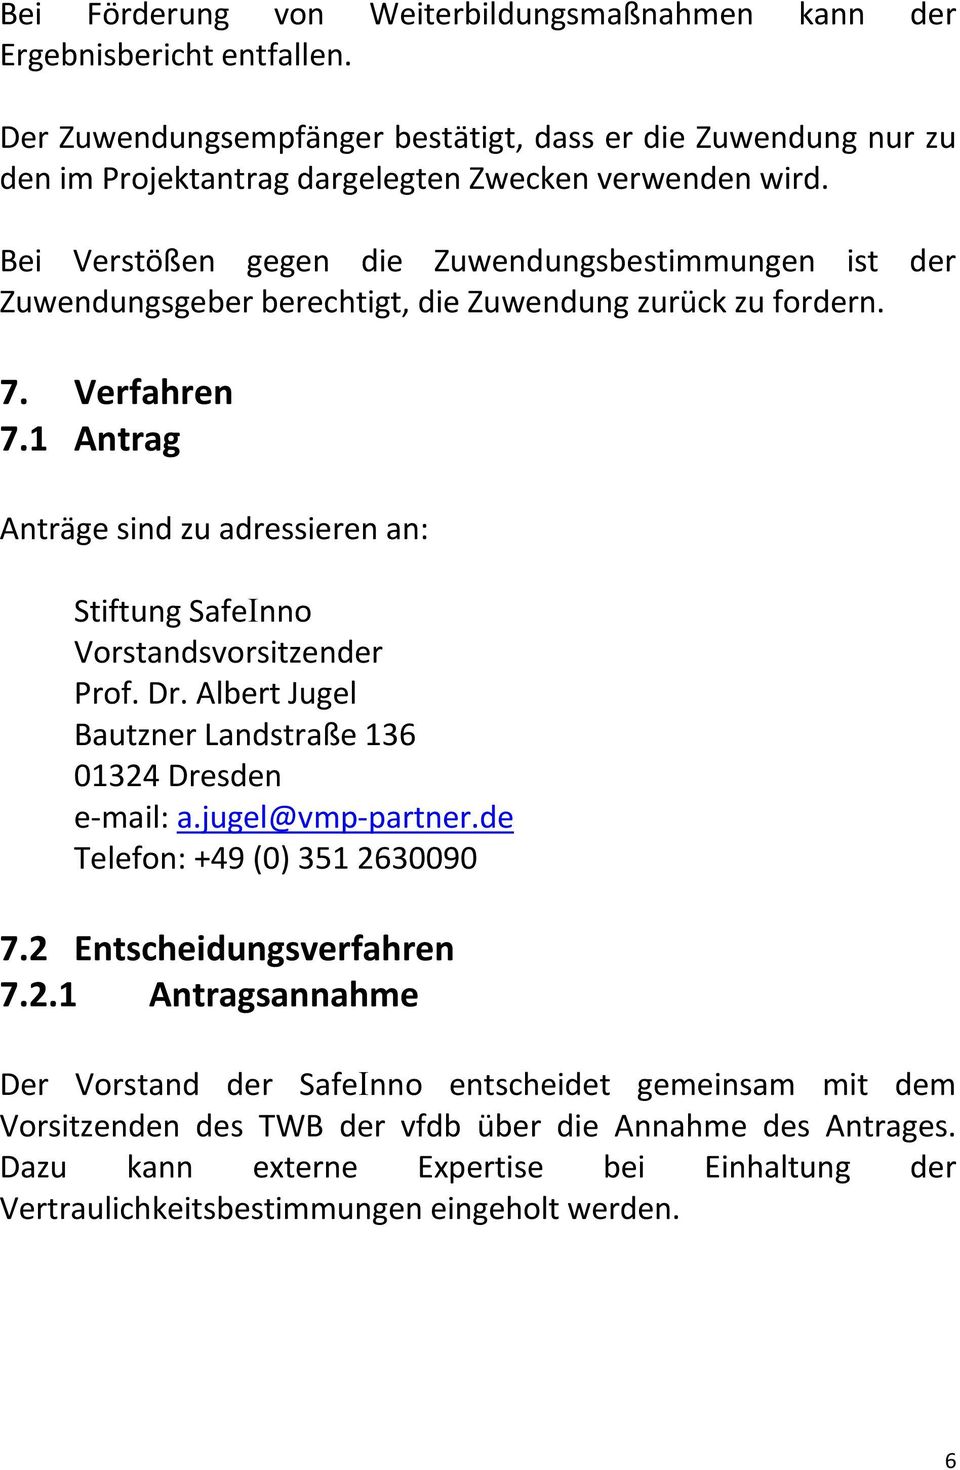 1 Antrag AntrÇge sind zu adressieren an: Stiftung SafeInno Vorstandsvorsitzender Prof. Dr. Albert Jugel Bautzner LandstraÉe 136 01324 Dresden e-mail: a.jugel@vmp-partner.